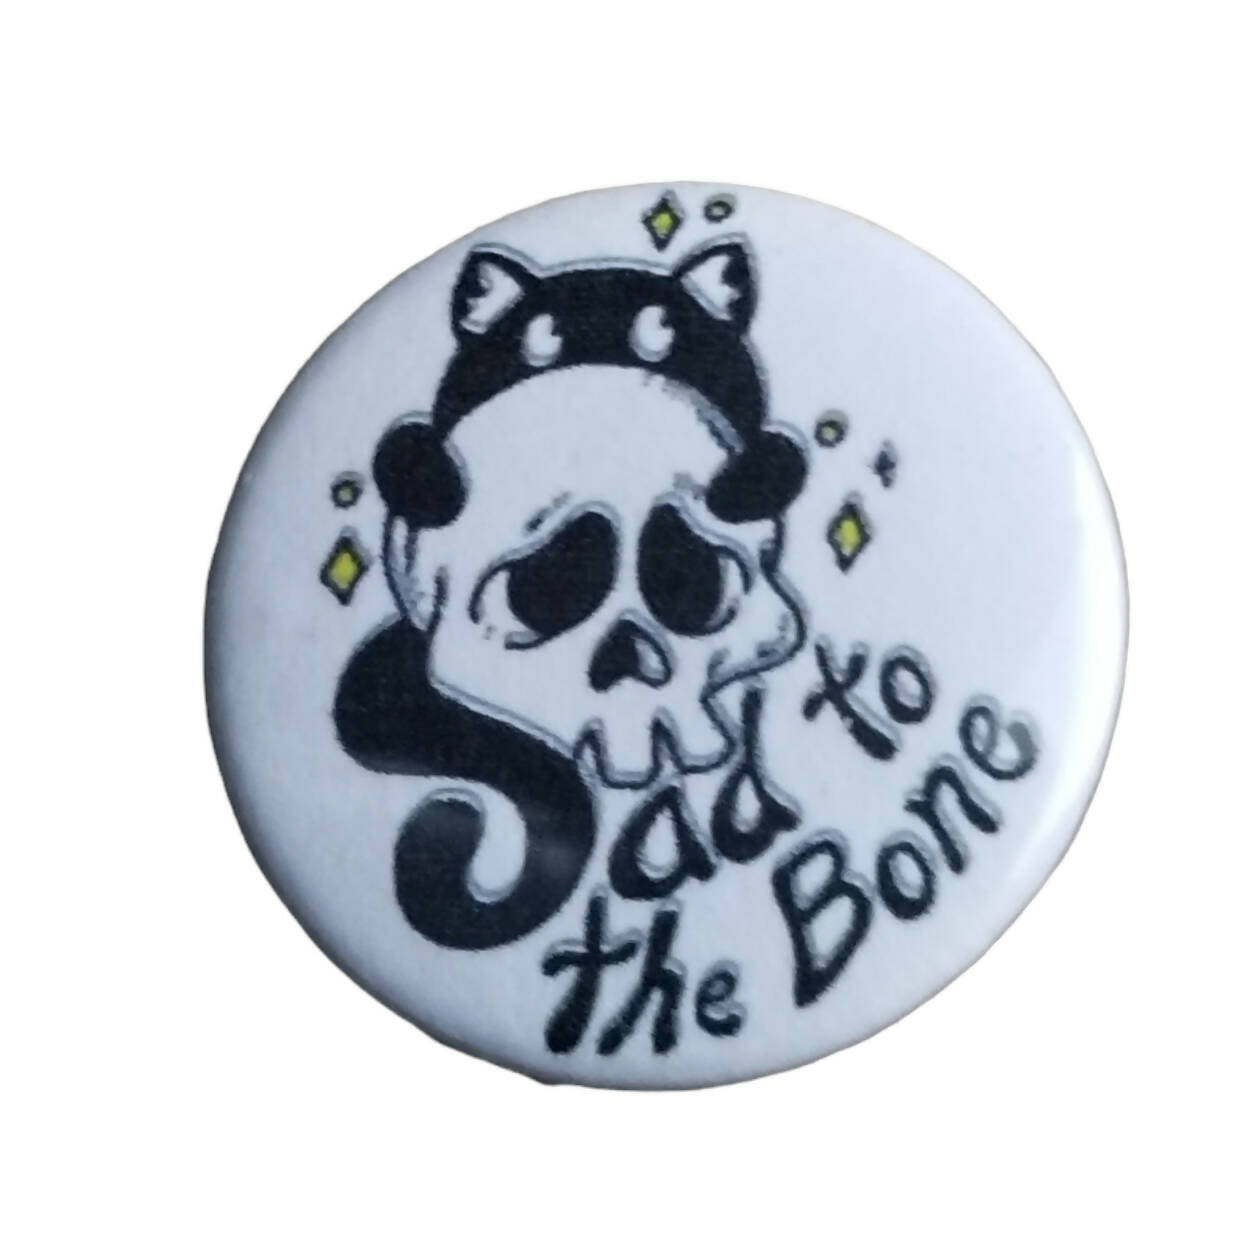 Sad To The Bone pin